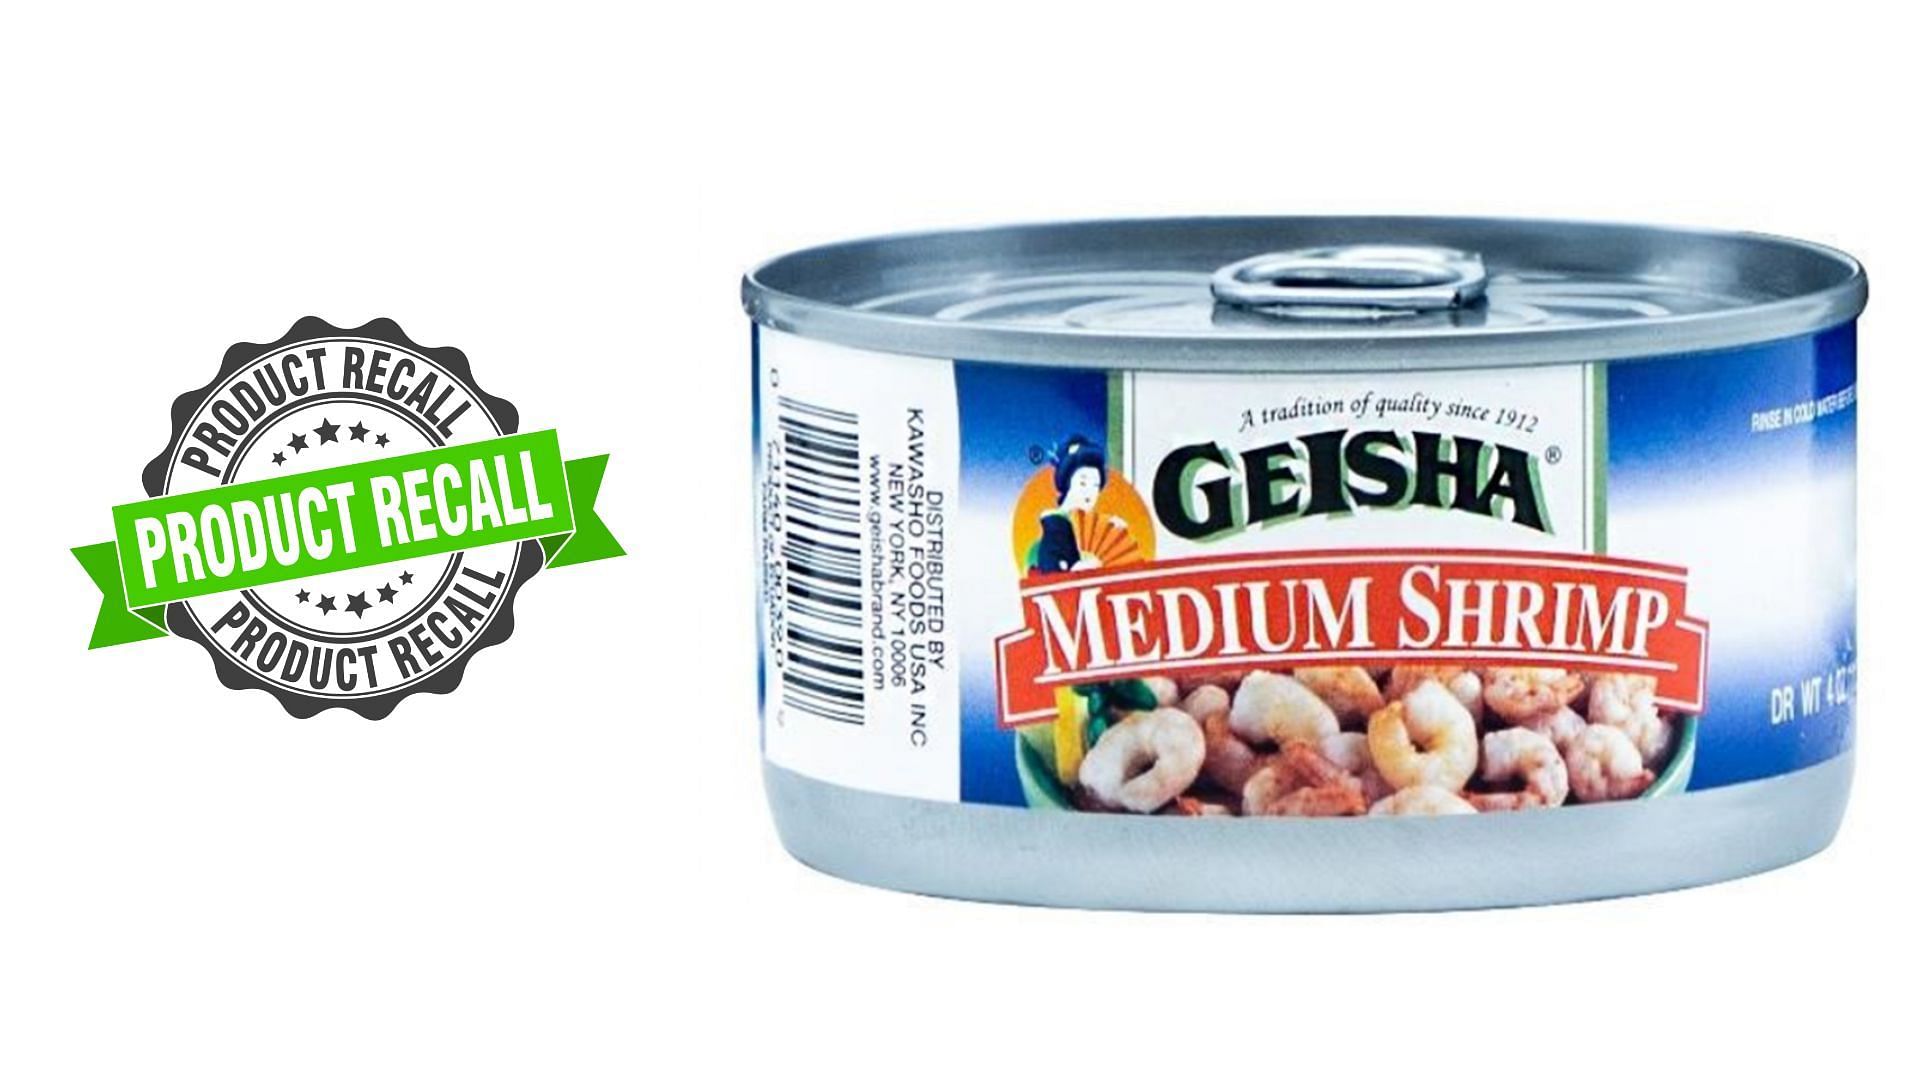 Kawasho Foods USA Inc. recalls GEISHA Medium Shrimp over concerns of contamination (Image via FDA)